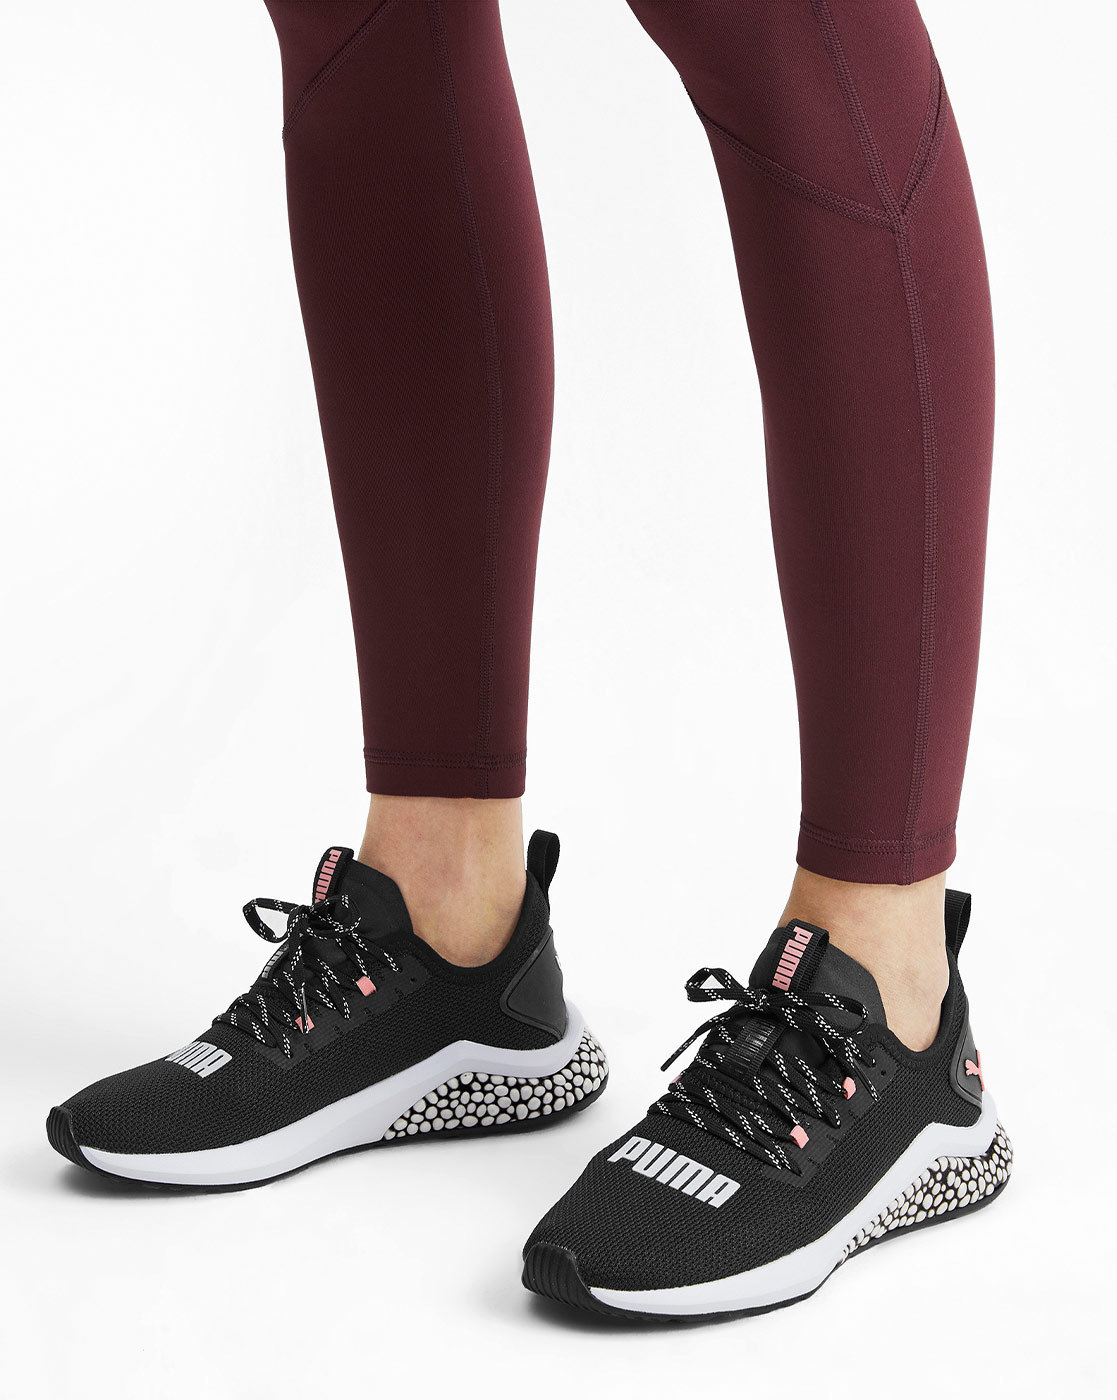 womens puma hybrid nx athletic shoe